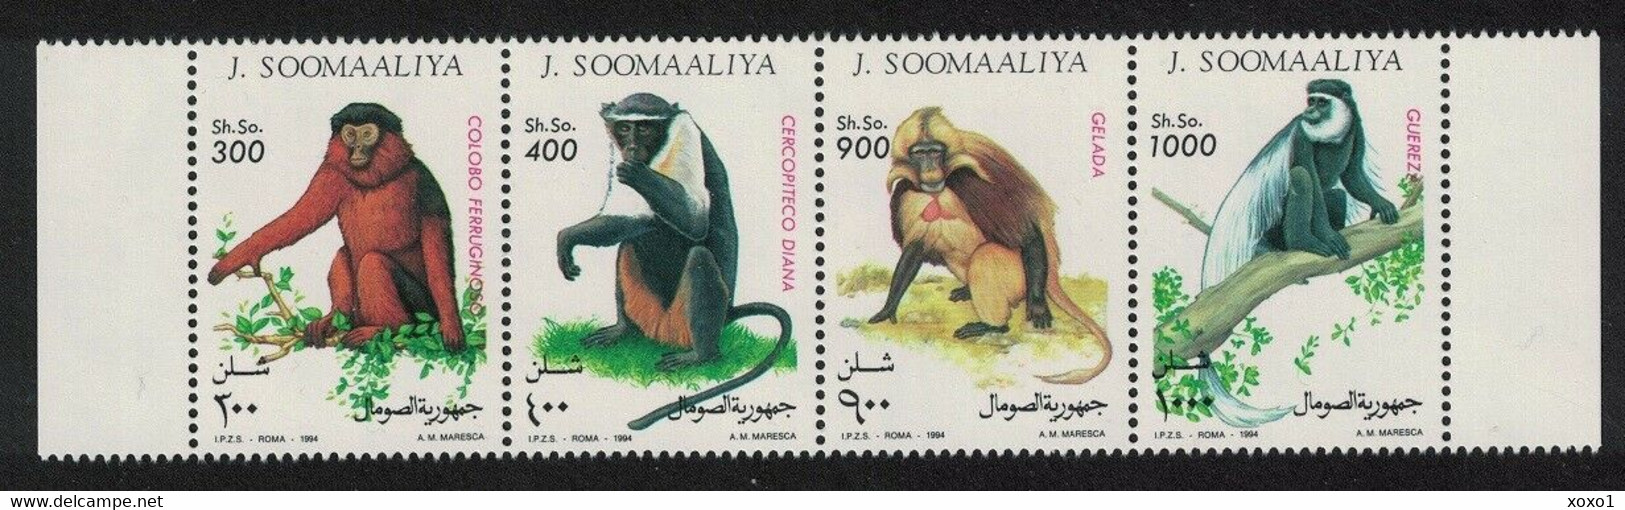 Somalia 1994 MiNr. 520 - 523  Animals Monkeys 4v MNH**  8,50 € - Affen